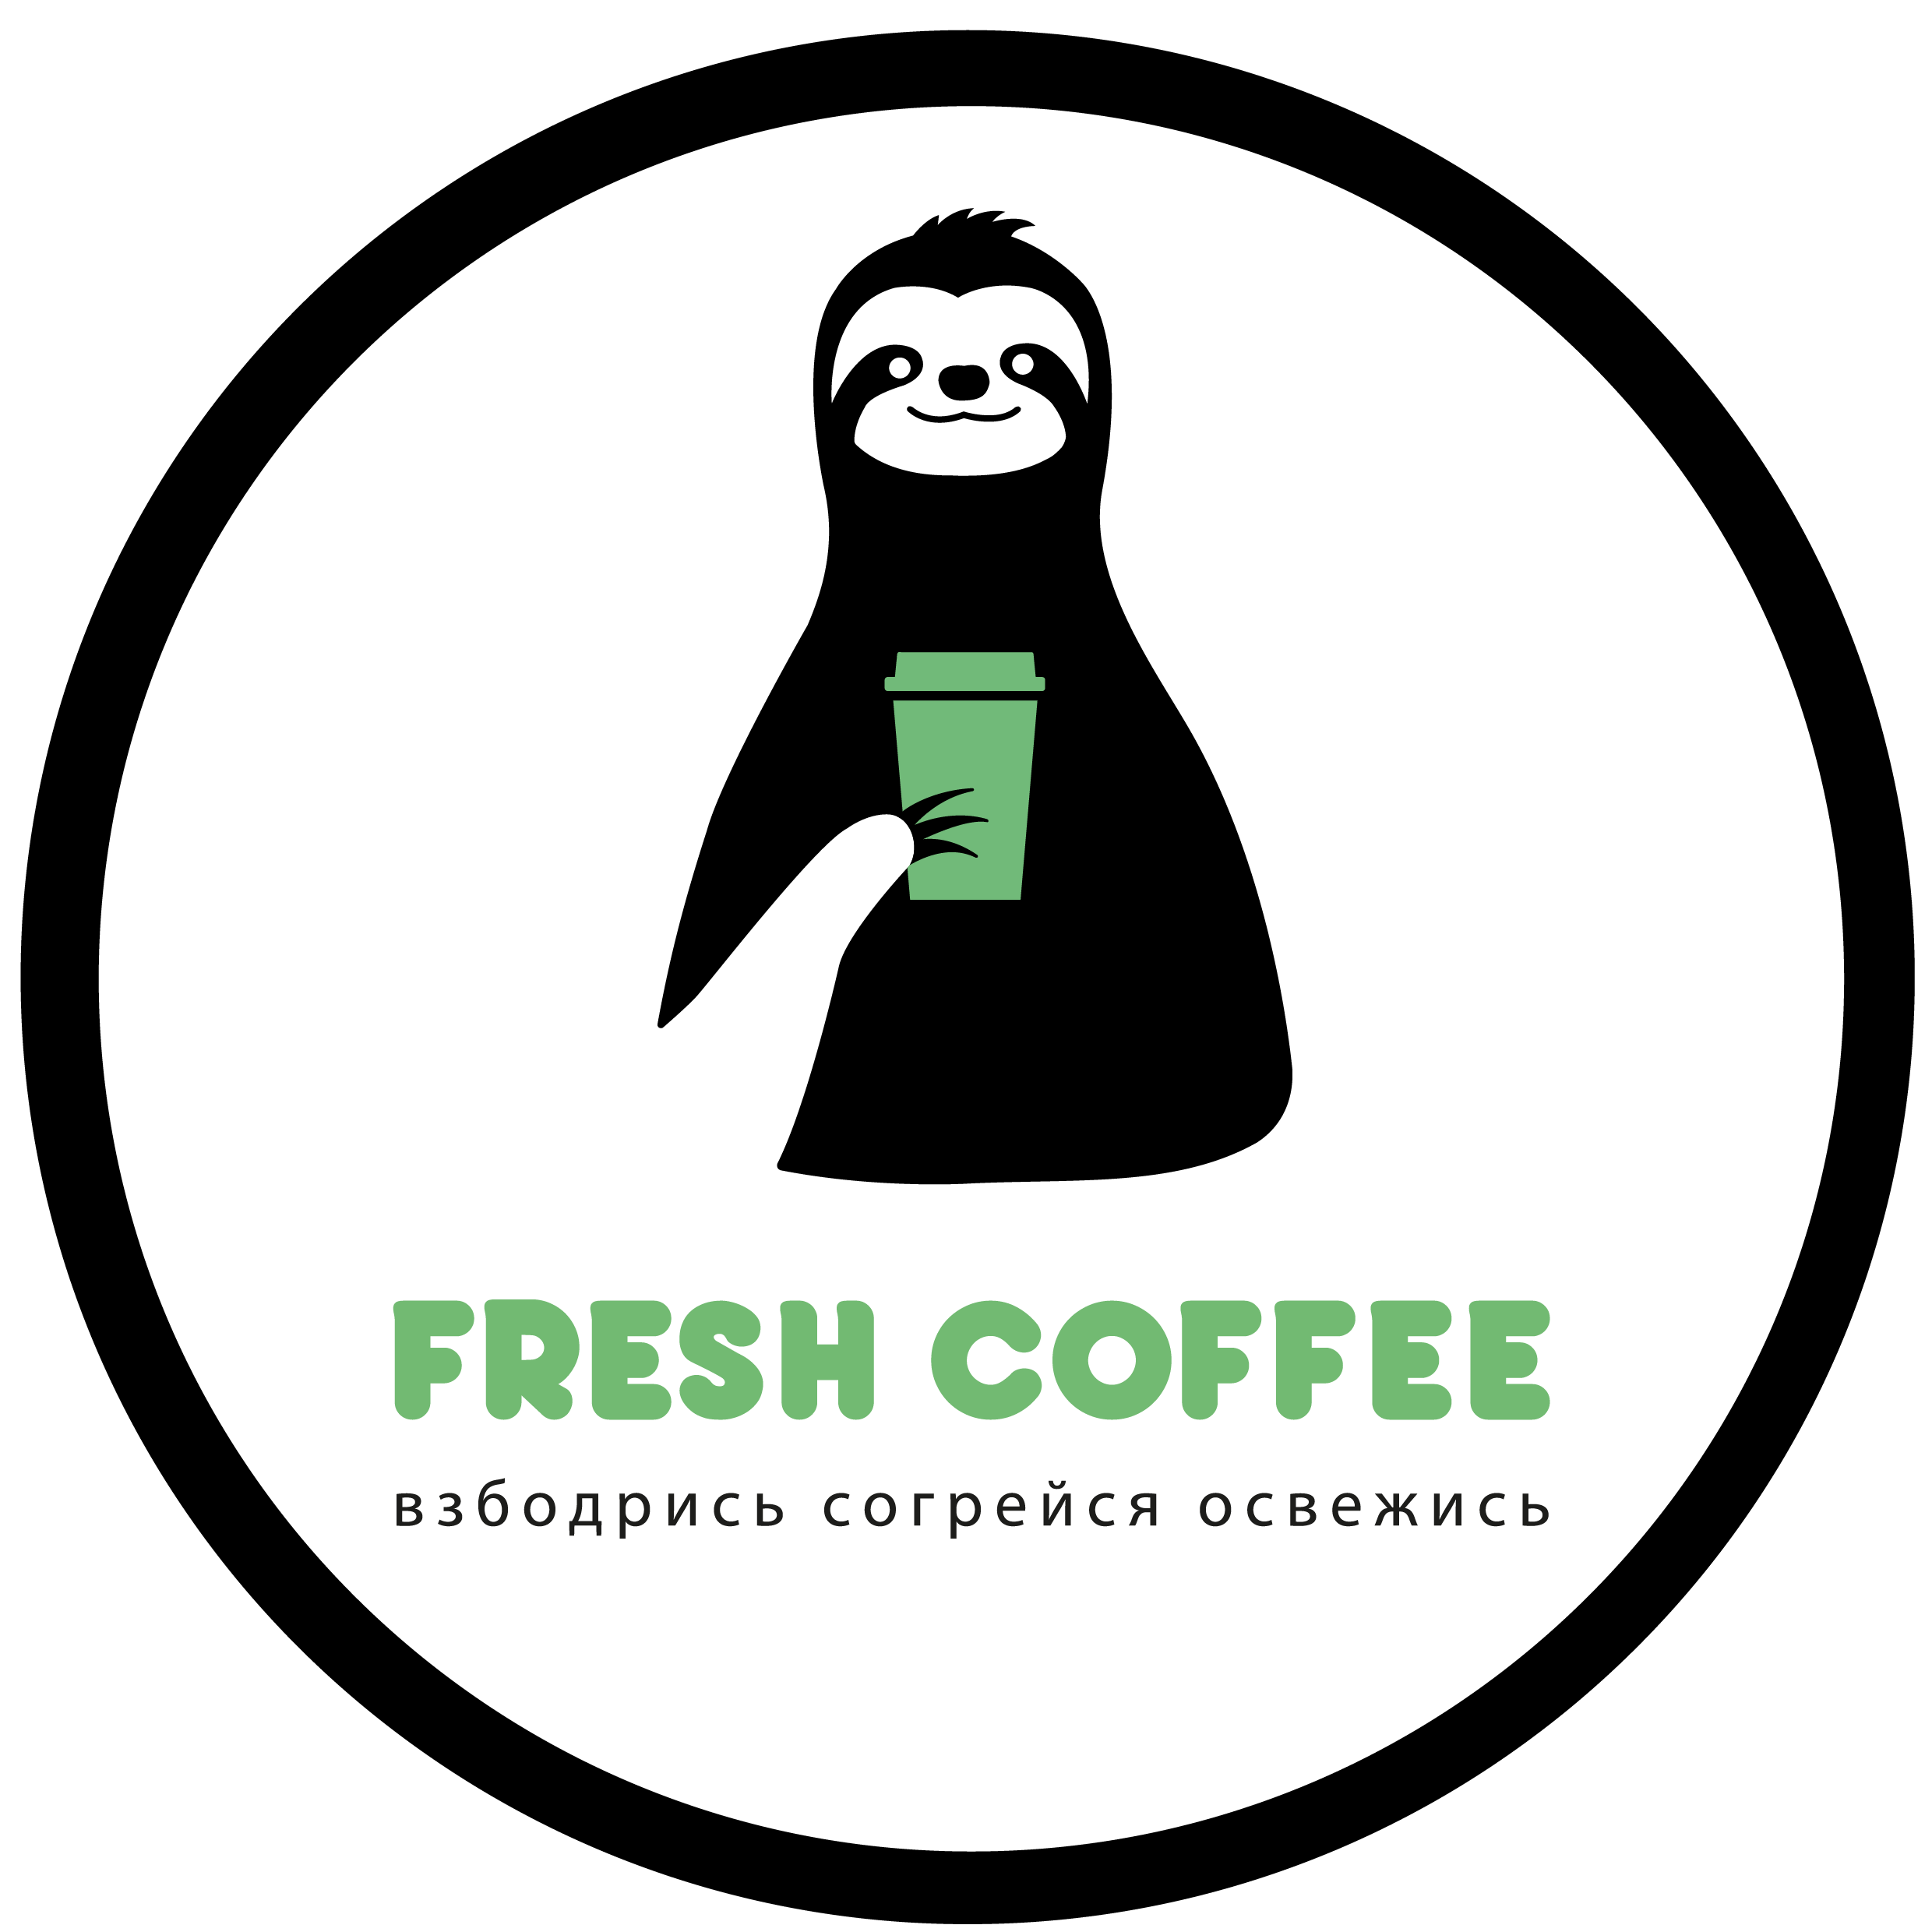 Fresh coffee франшиза супертяж севастополь франшиза купить